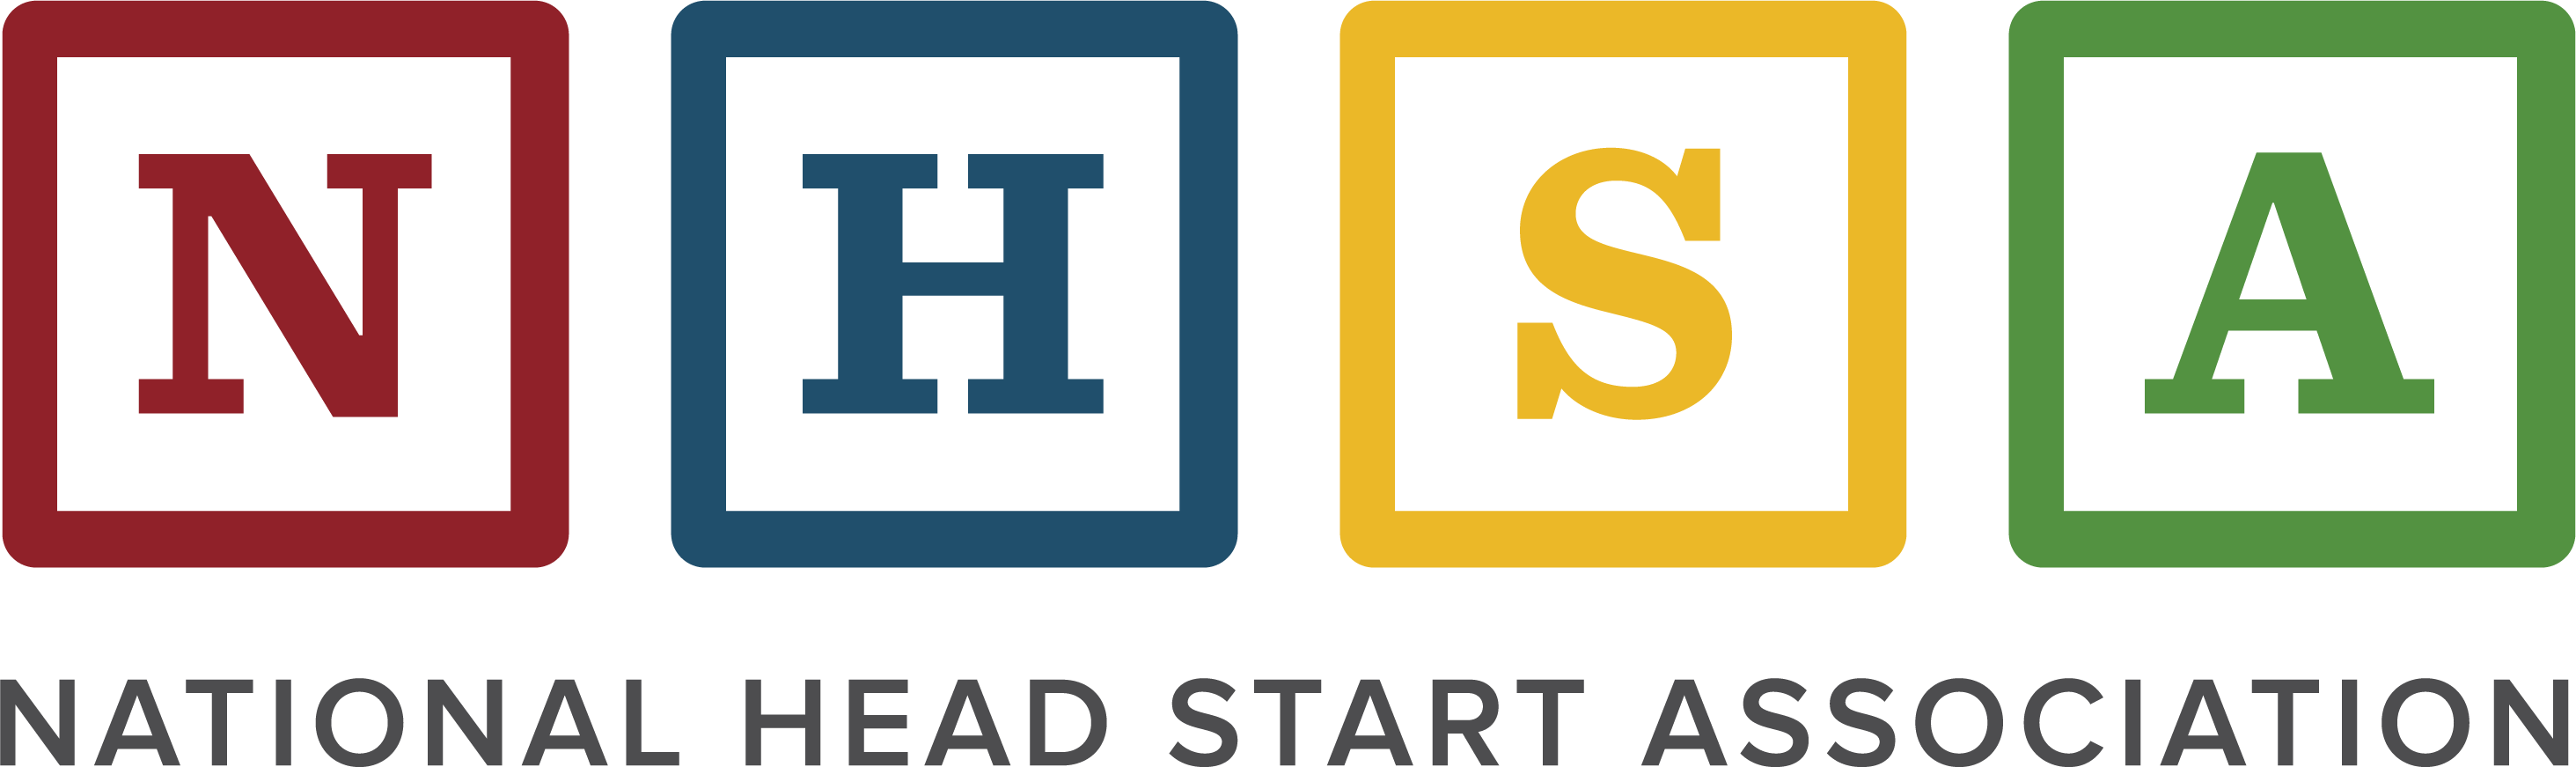 National Head Start Association logo